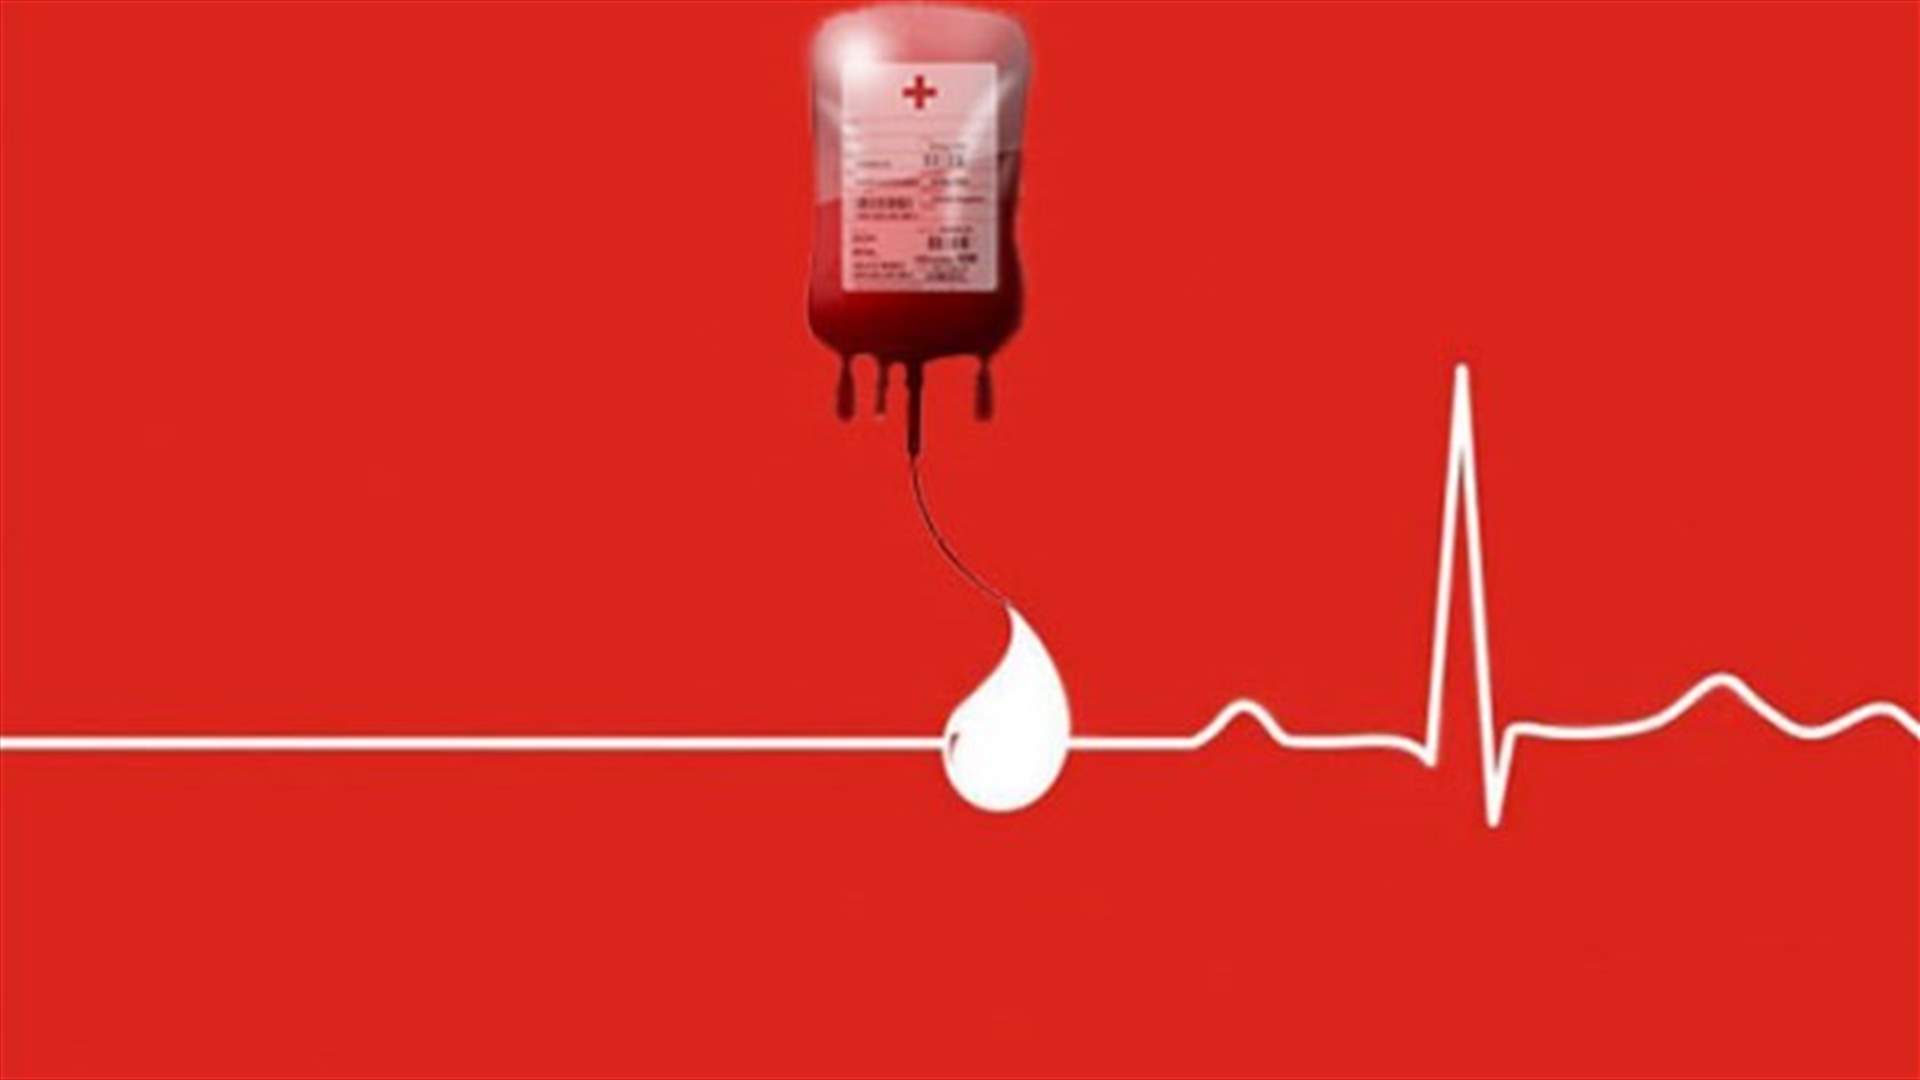 مريض في مستشفى اوتيل ديو بحاجة الى دم وبلاكيت دم من فئة A+ ... للتبرع الاتصال على 03217846